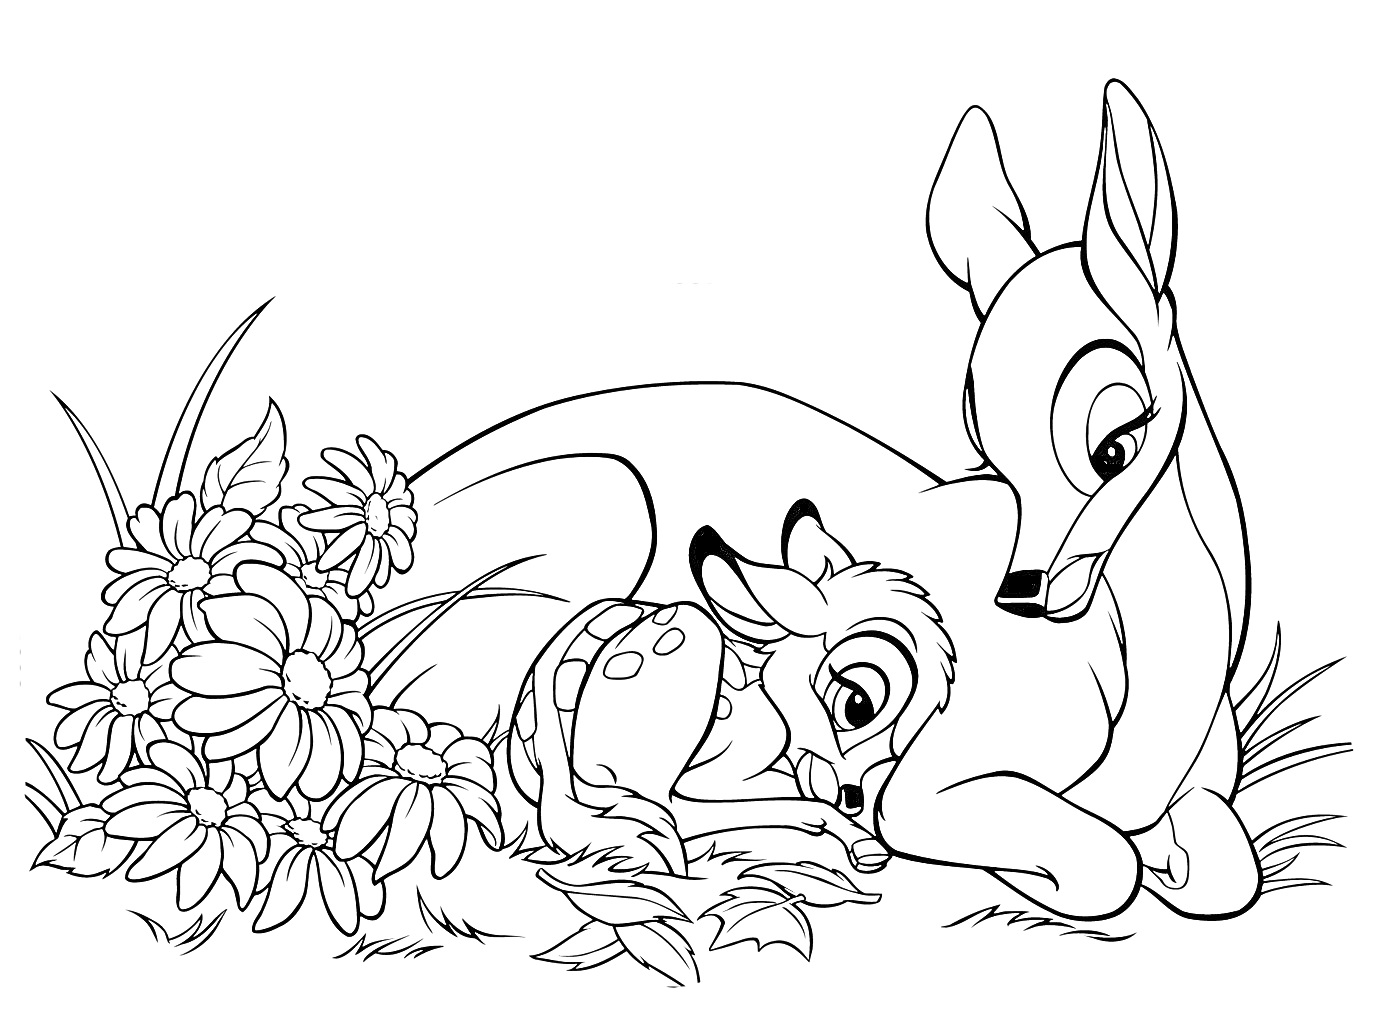 Раскраска Бэмби и его мама рядом с цветами